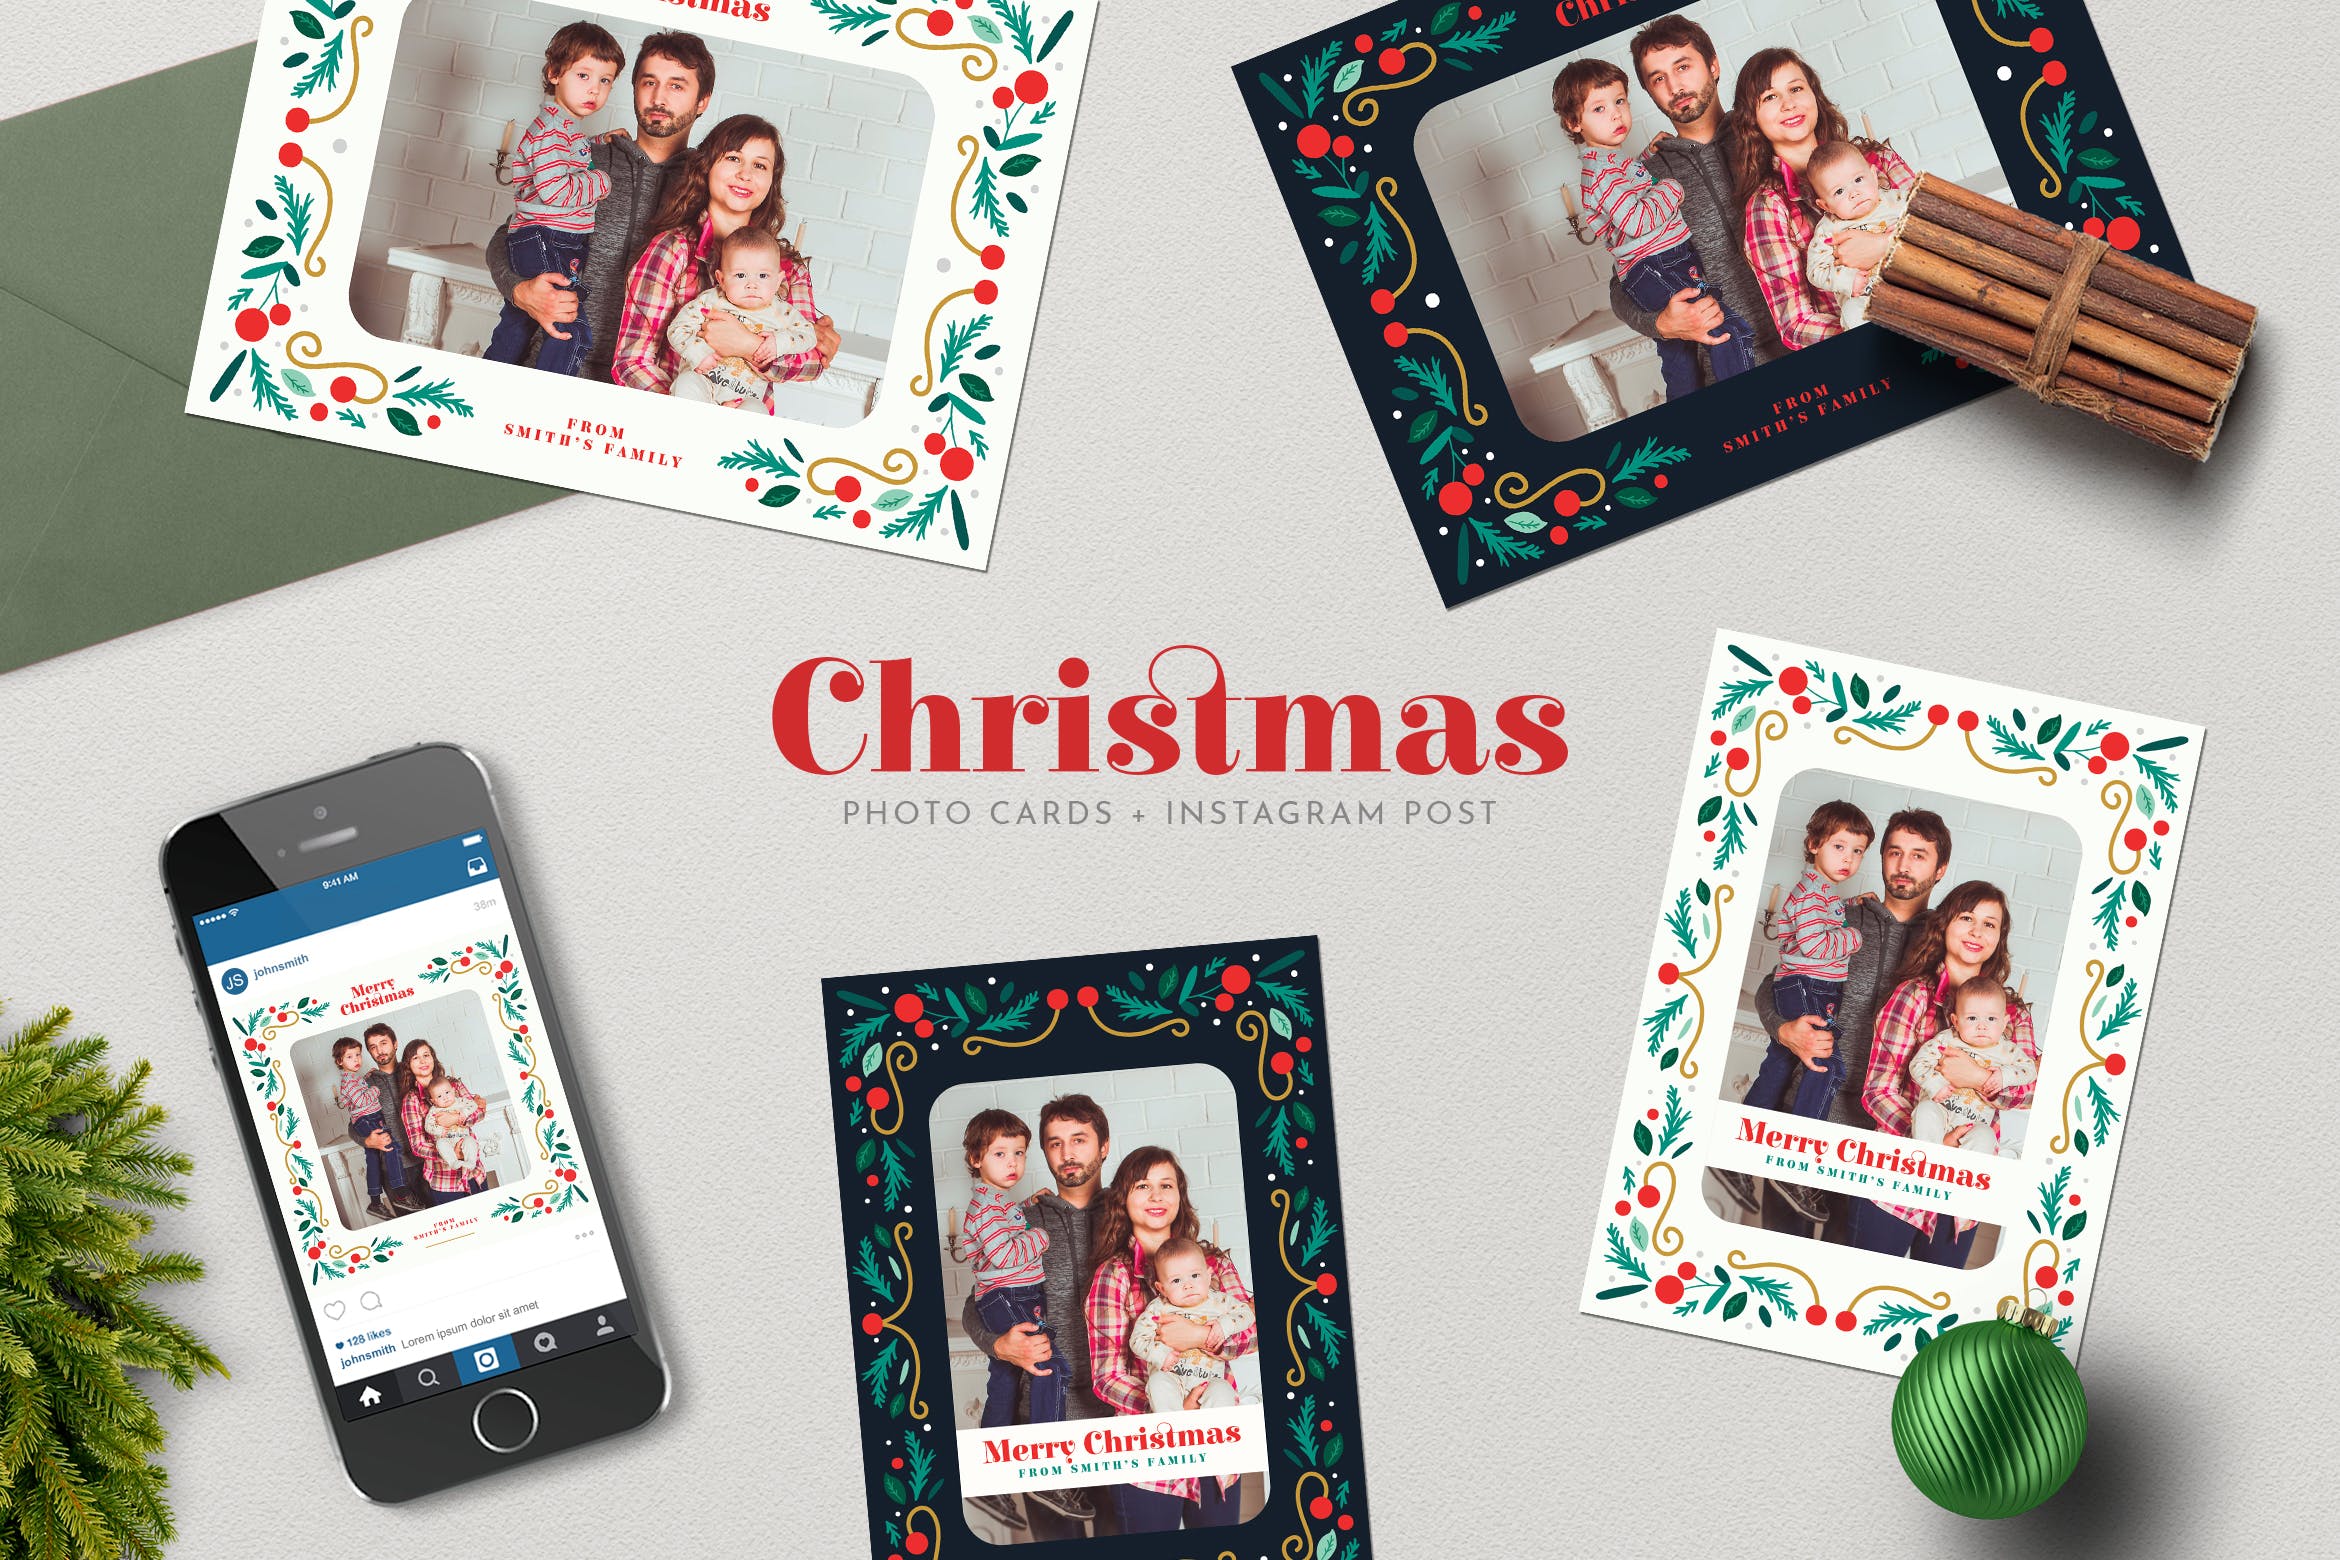 圣诞节照片明信片&Instagram贴图设计模板普贤居精选 Christmas PhotoCards +Instagram Post插图